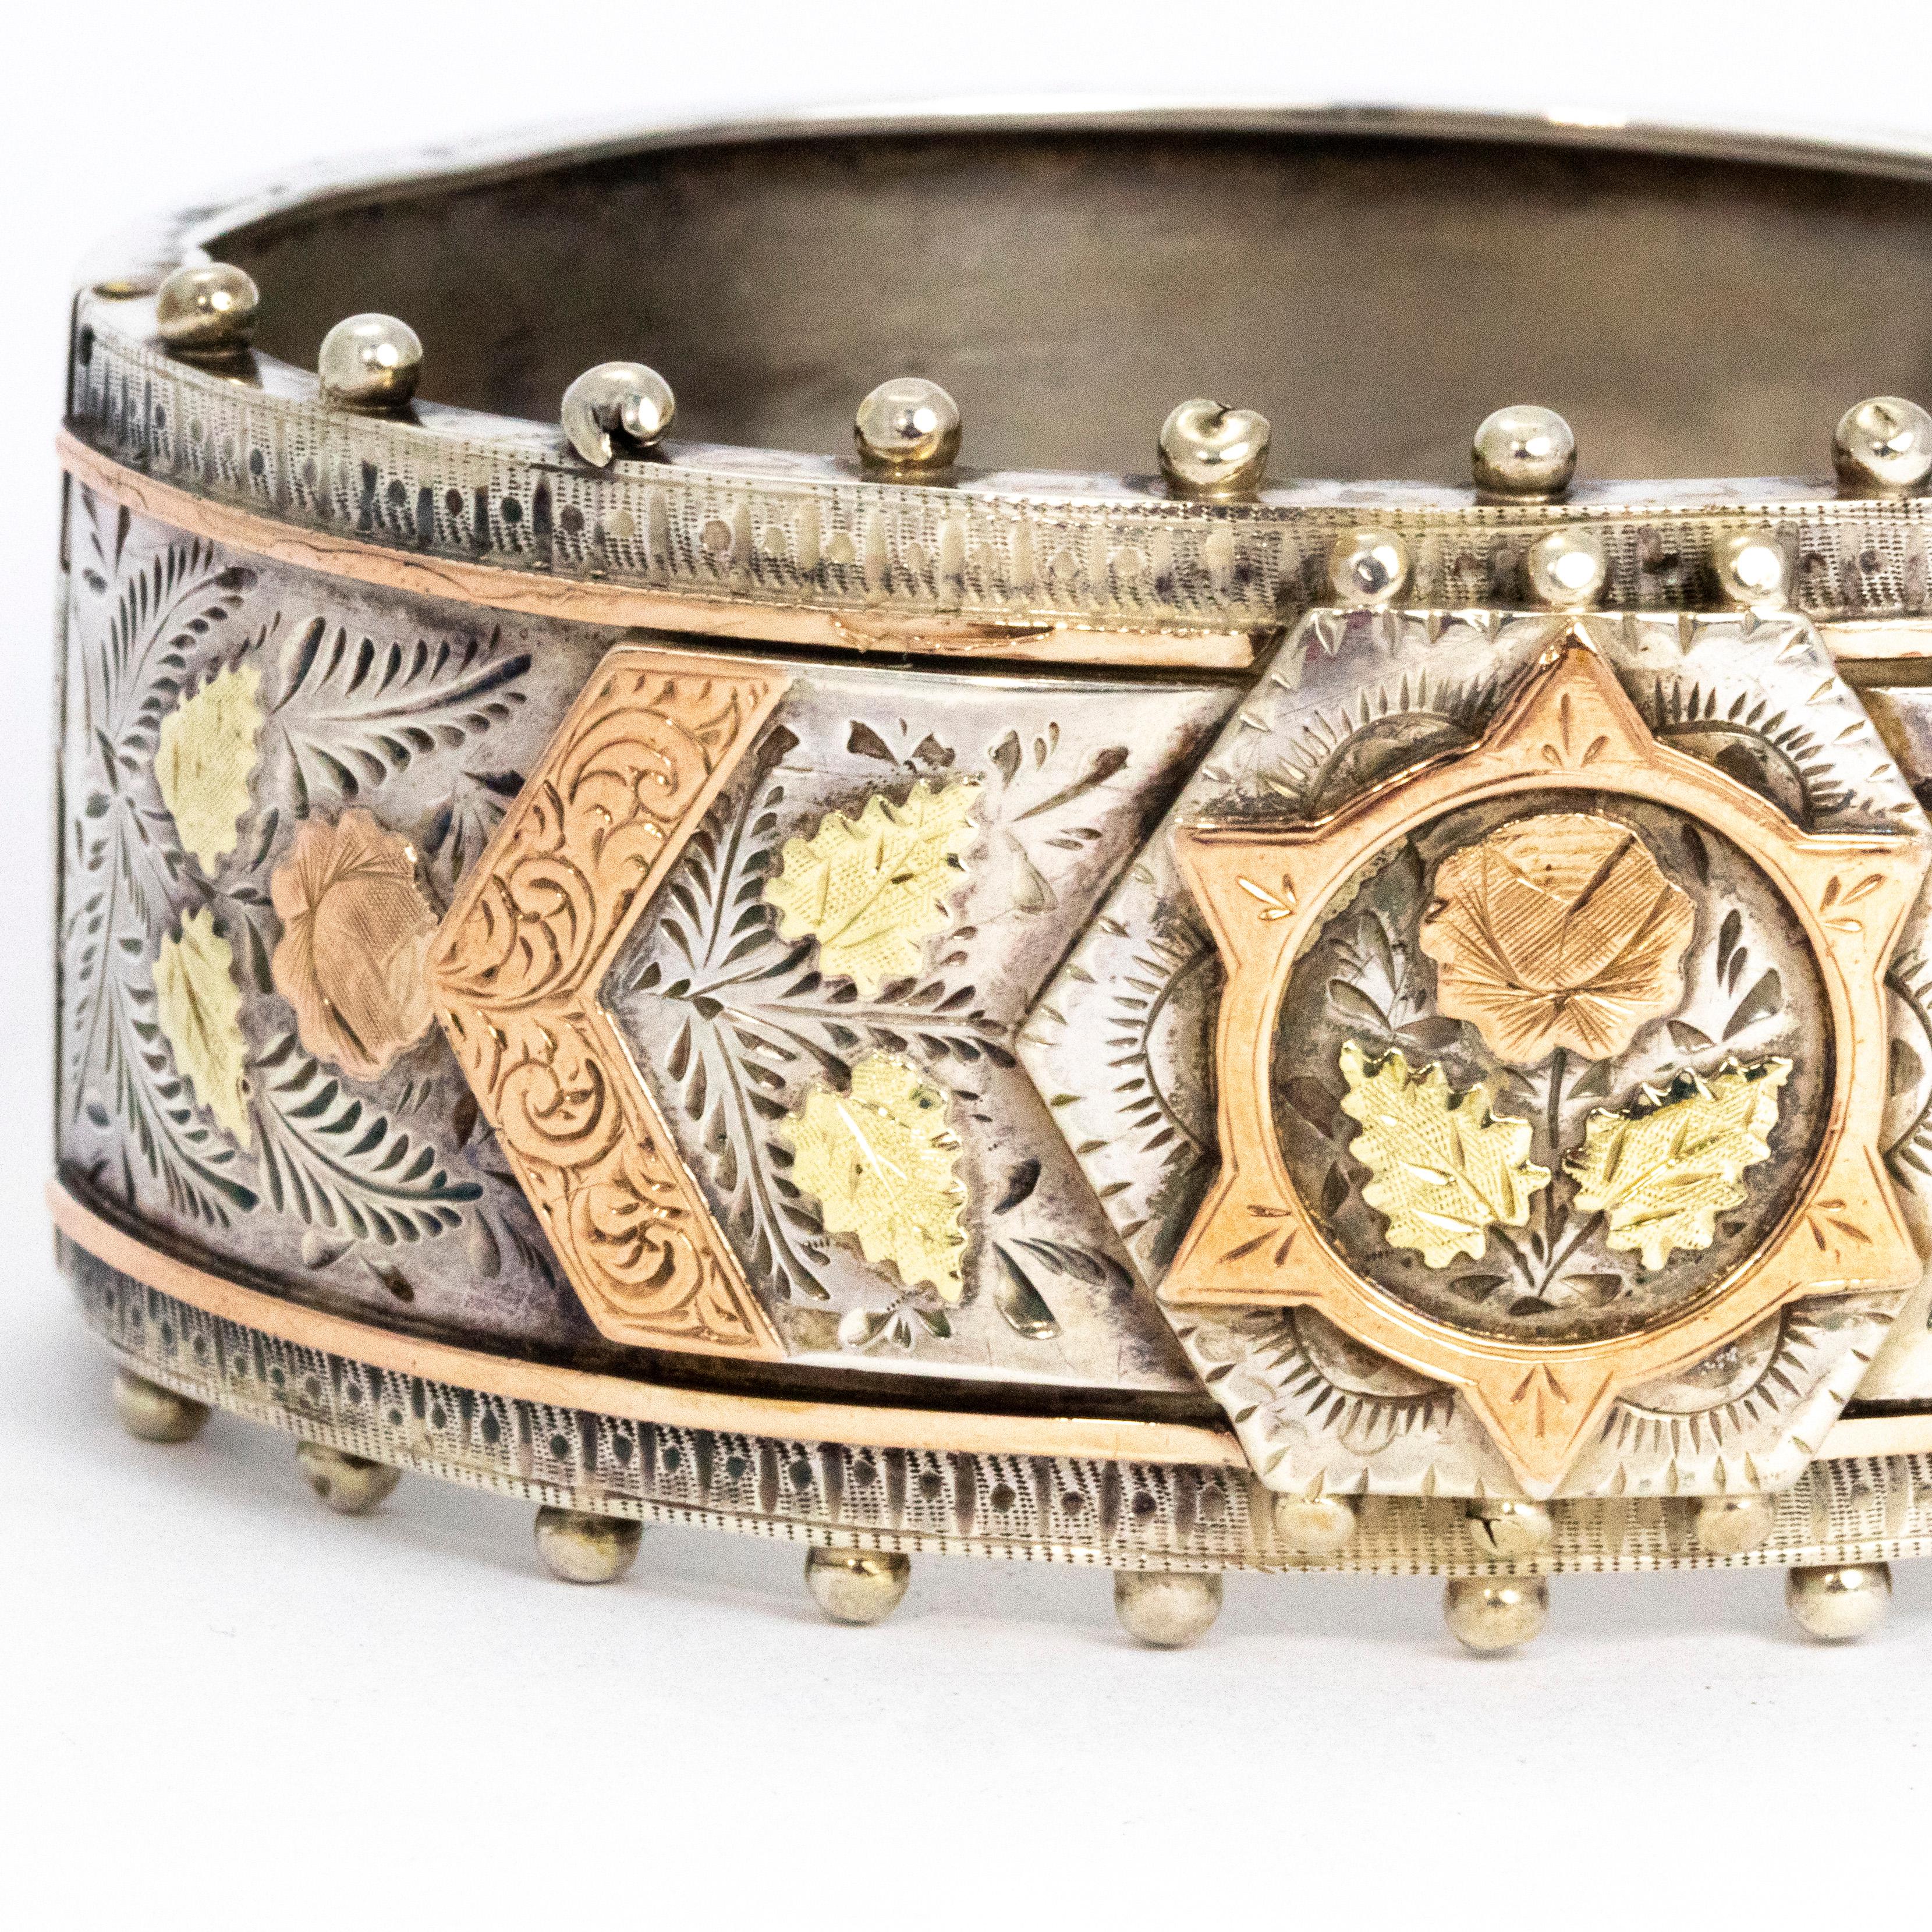 Ce superbe bracelet présente des détails en argent, or jaune et or rose. L'anneau principal est modelé en argent et comporte également des superpositions de plaques en argent. La plaque principale est ornée d'une magnifique fleur en or jaune et en